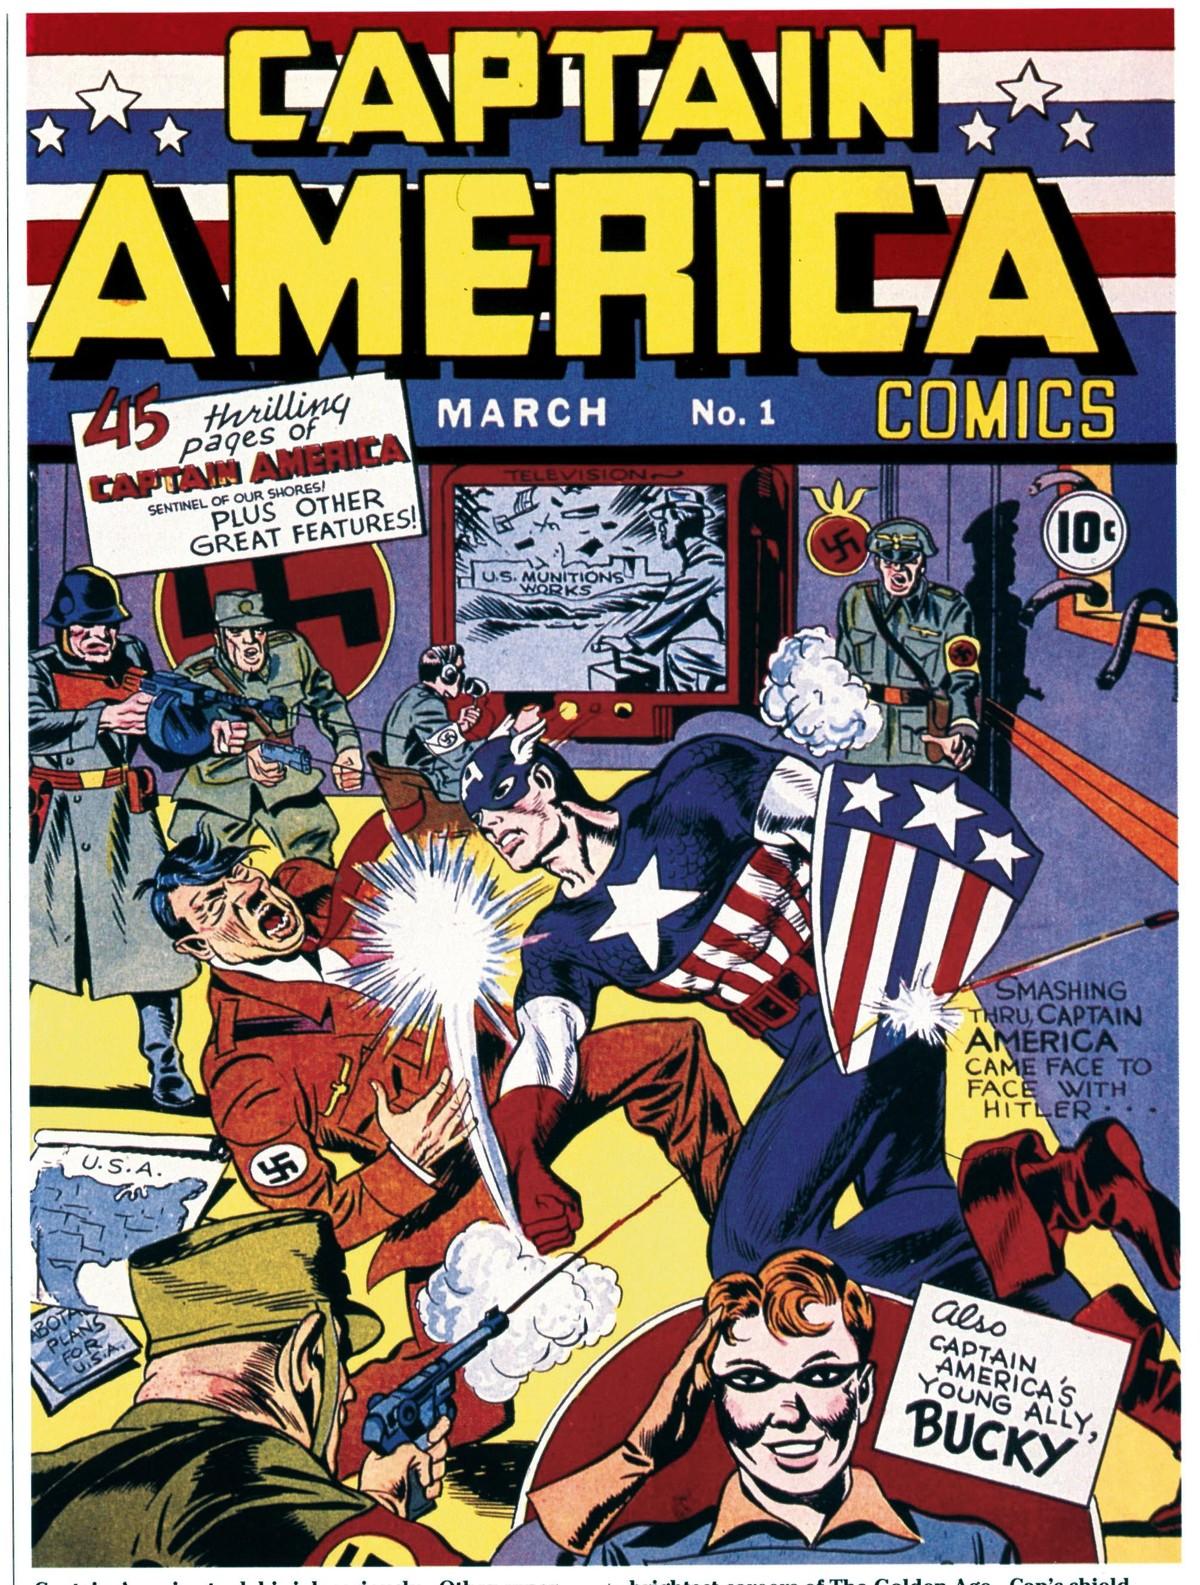 Doc. 4 Les super-héros des comics américains